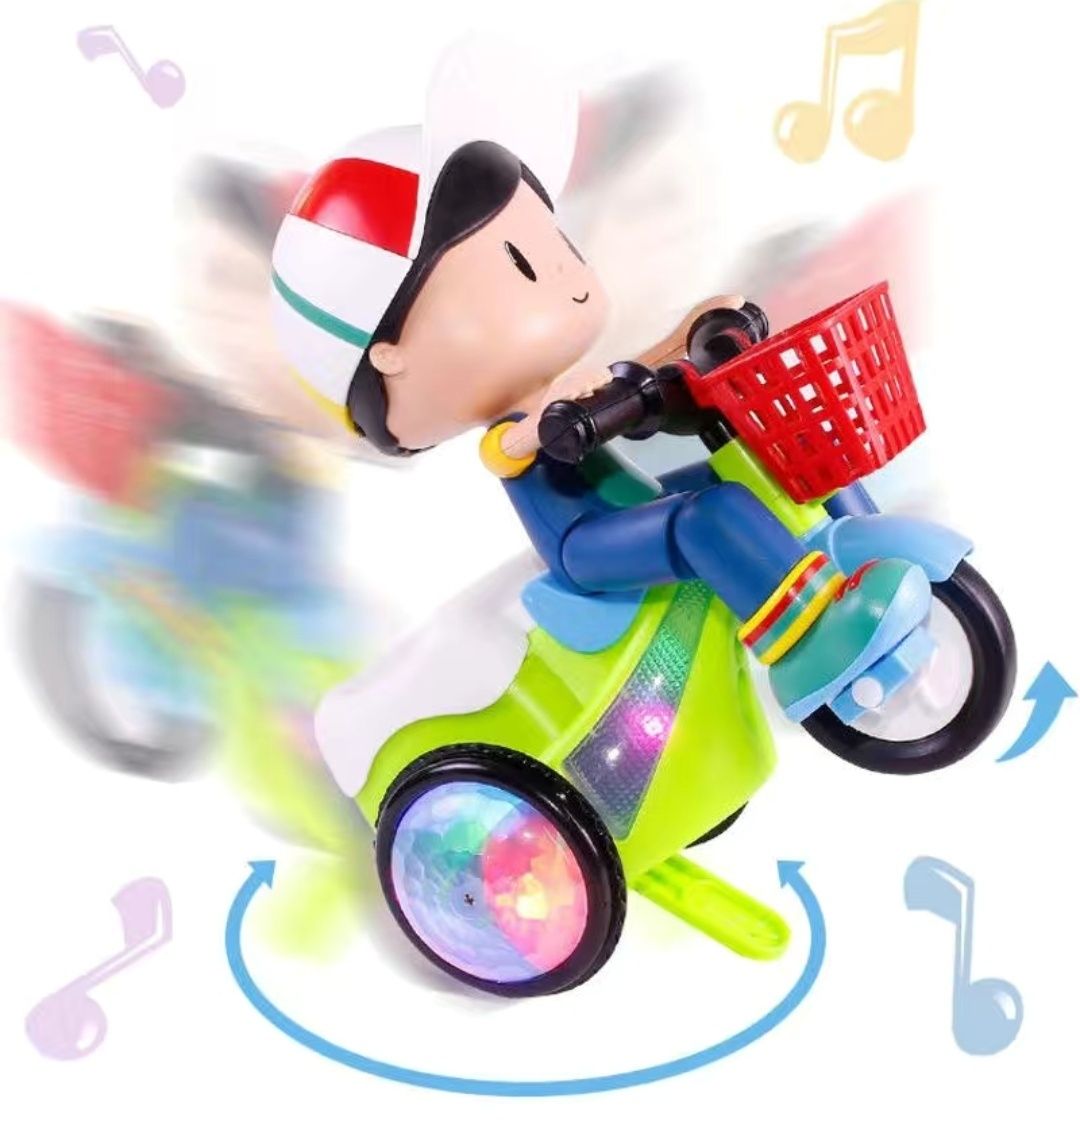 Іграшка музична, велосипед, качка- діджей, утка диджей, музыкальная.